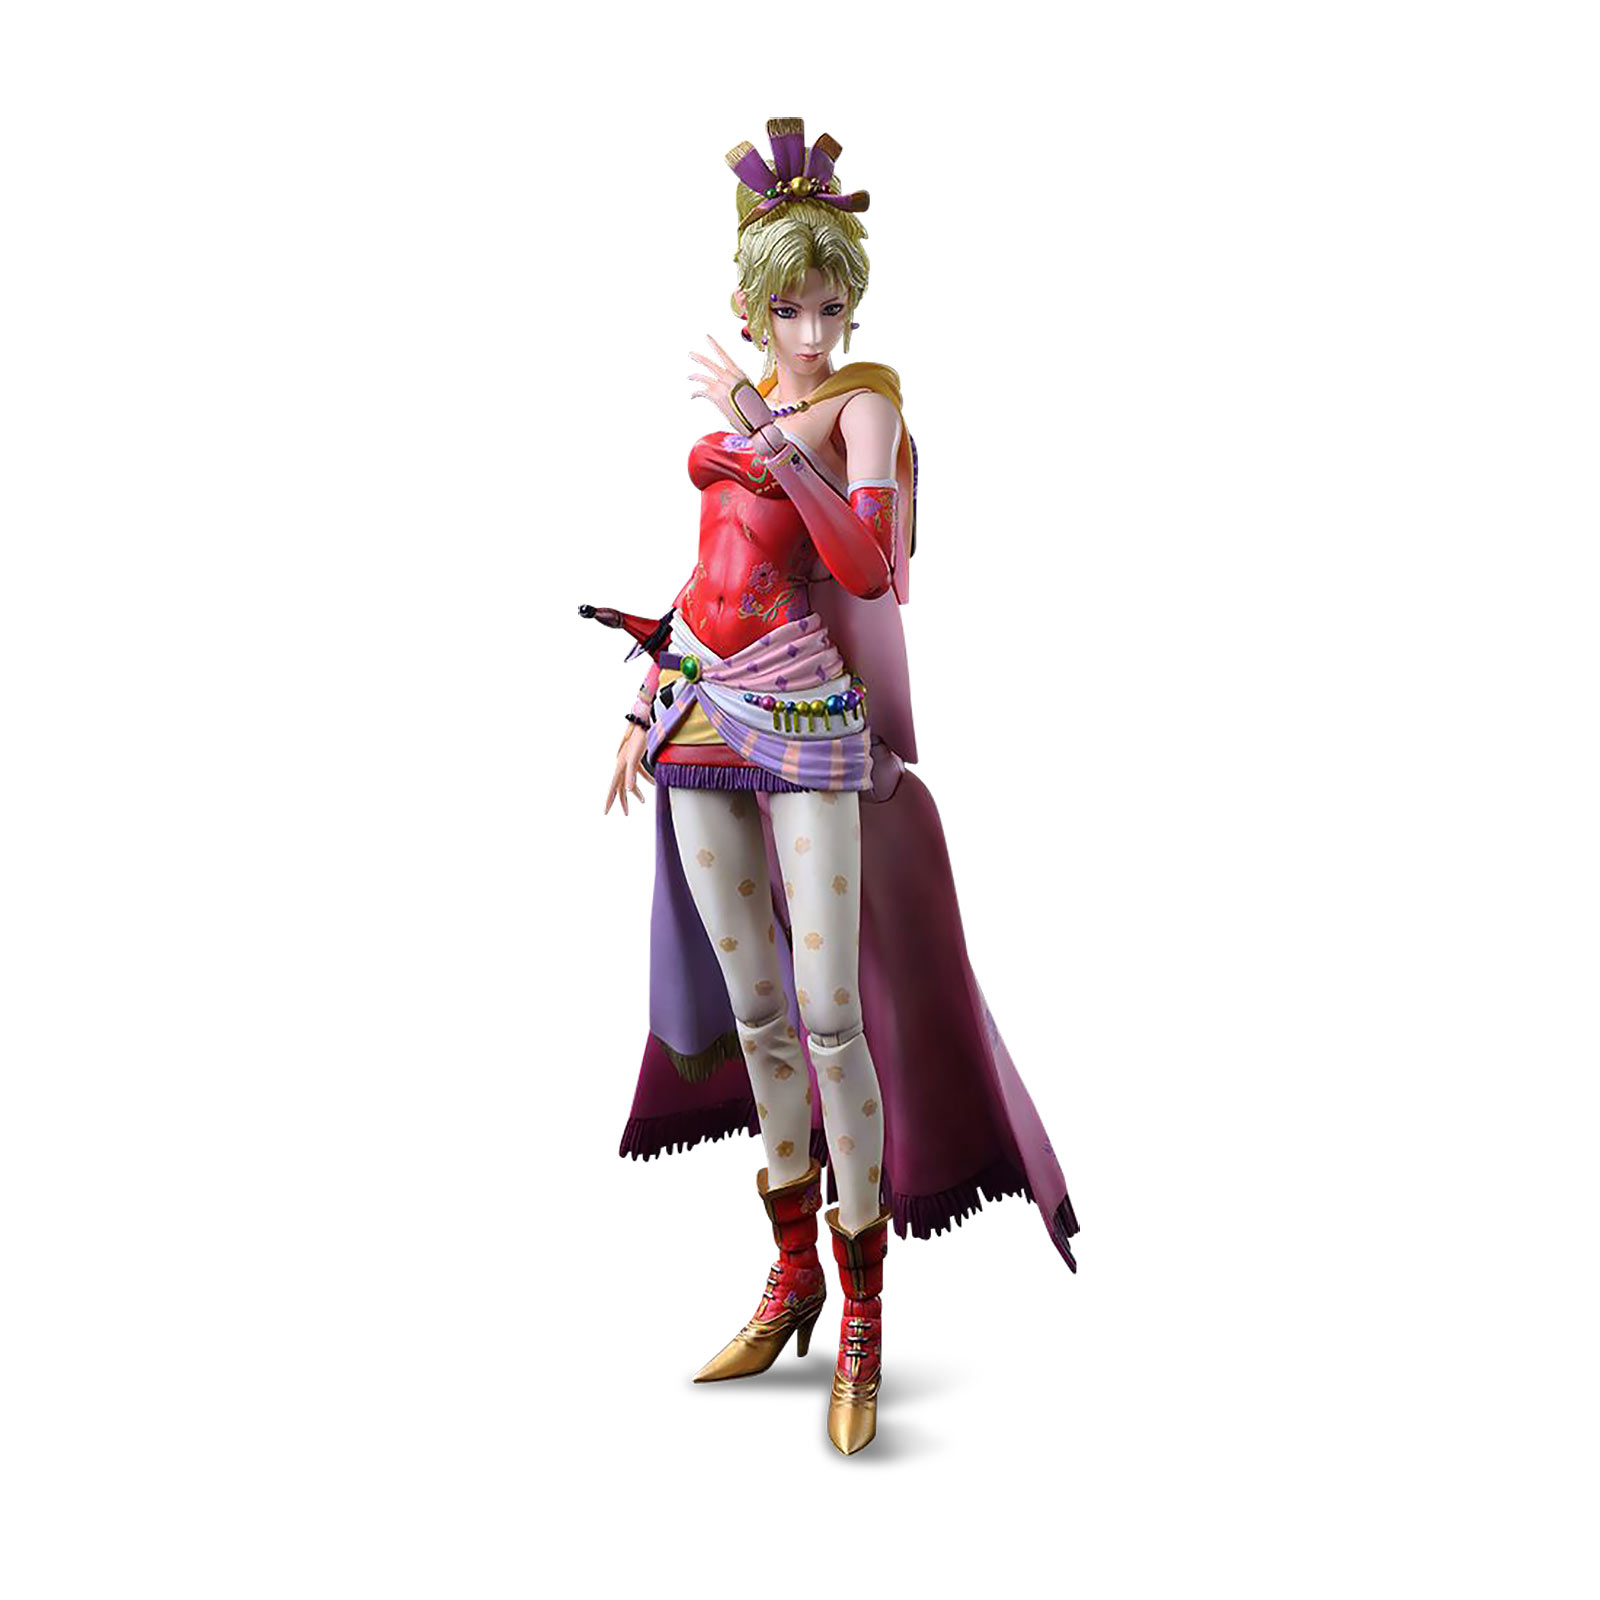 Final Fantasy - Terra Branford Actionfigur